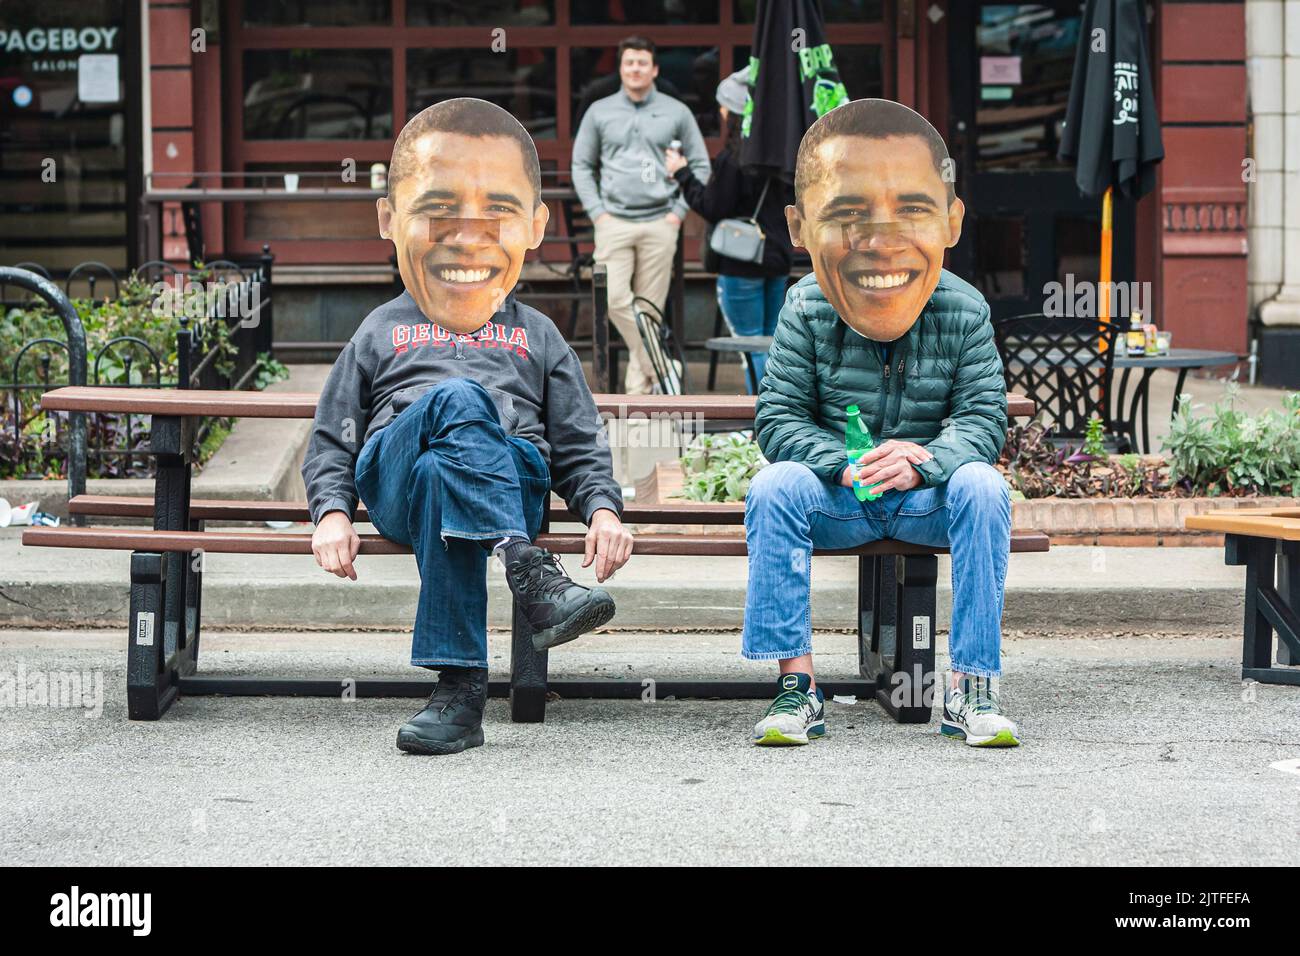 ATENAS, GA - 15 DE ENERO de 2022: Dos hombres que usan máscaras de Barack Obama sonriente y de gran tamaño se sientan en un banco de picnic el 15 de enero de 2022 en Atenas, GA. Foto de stock